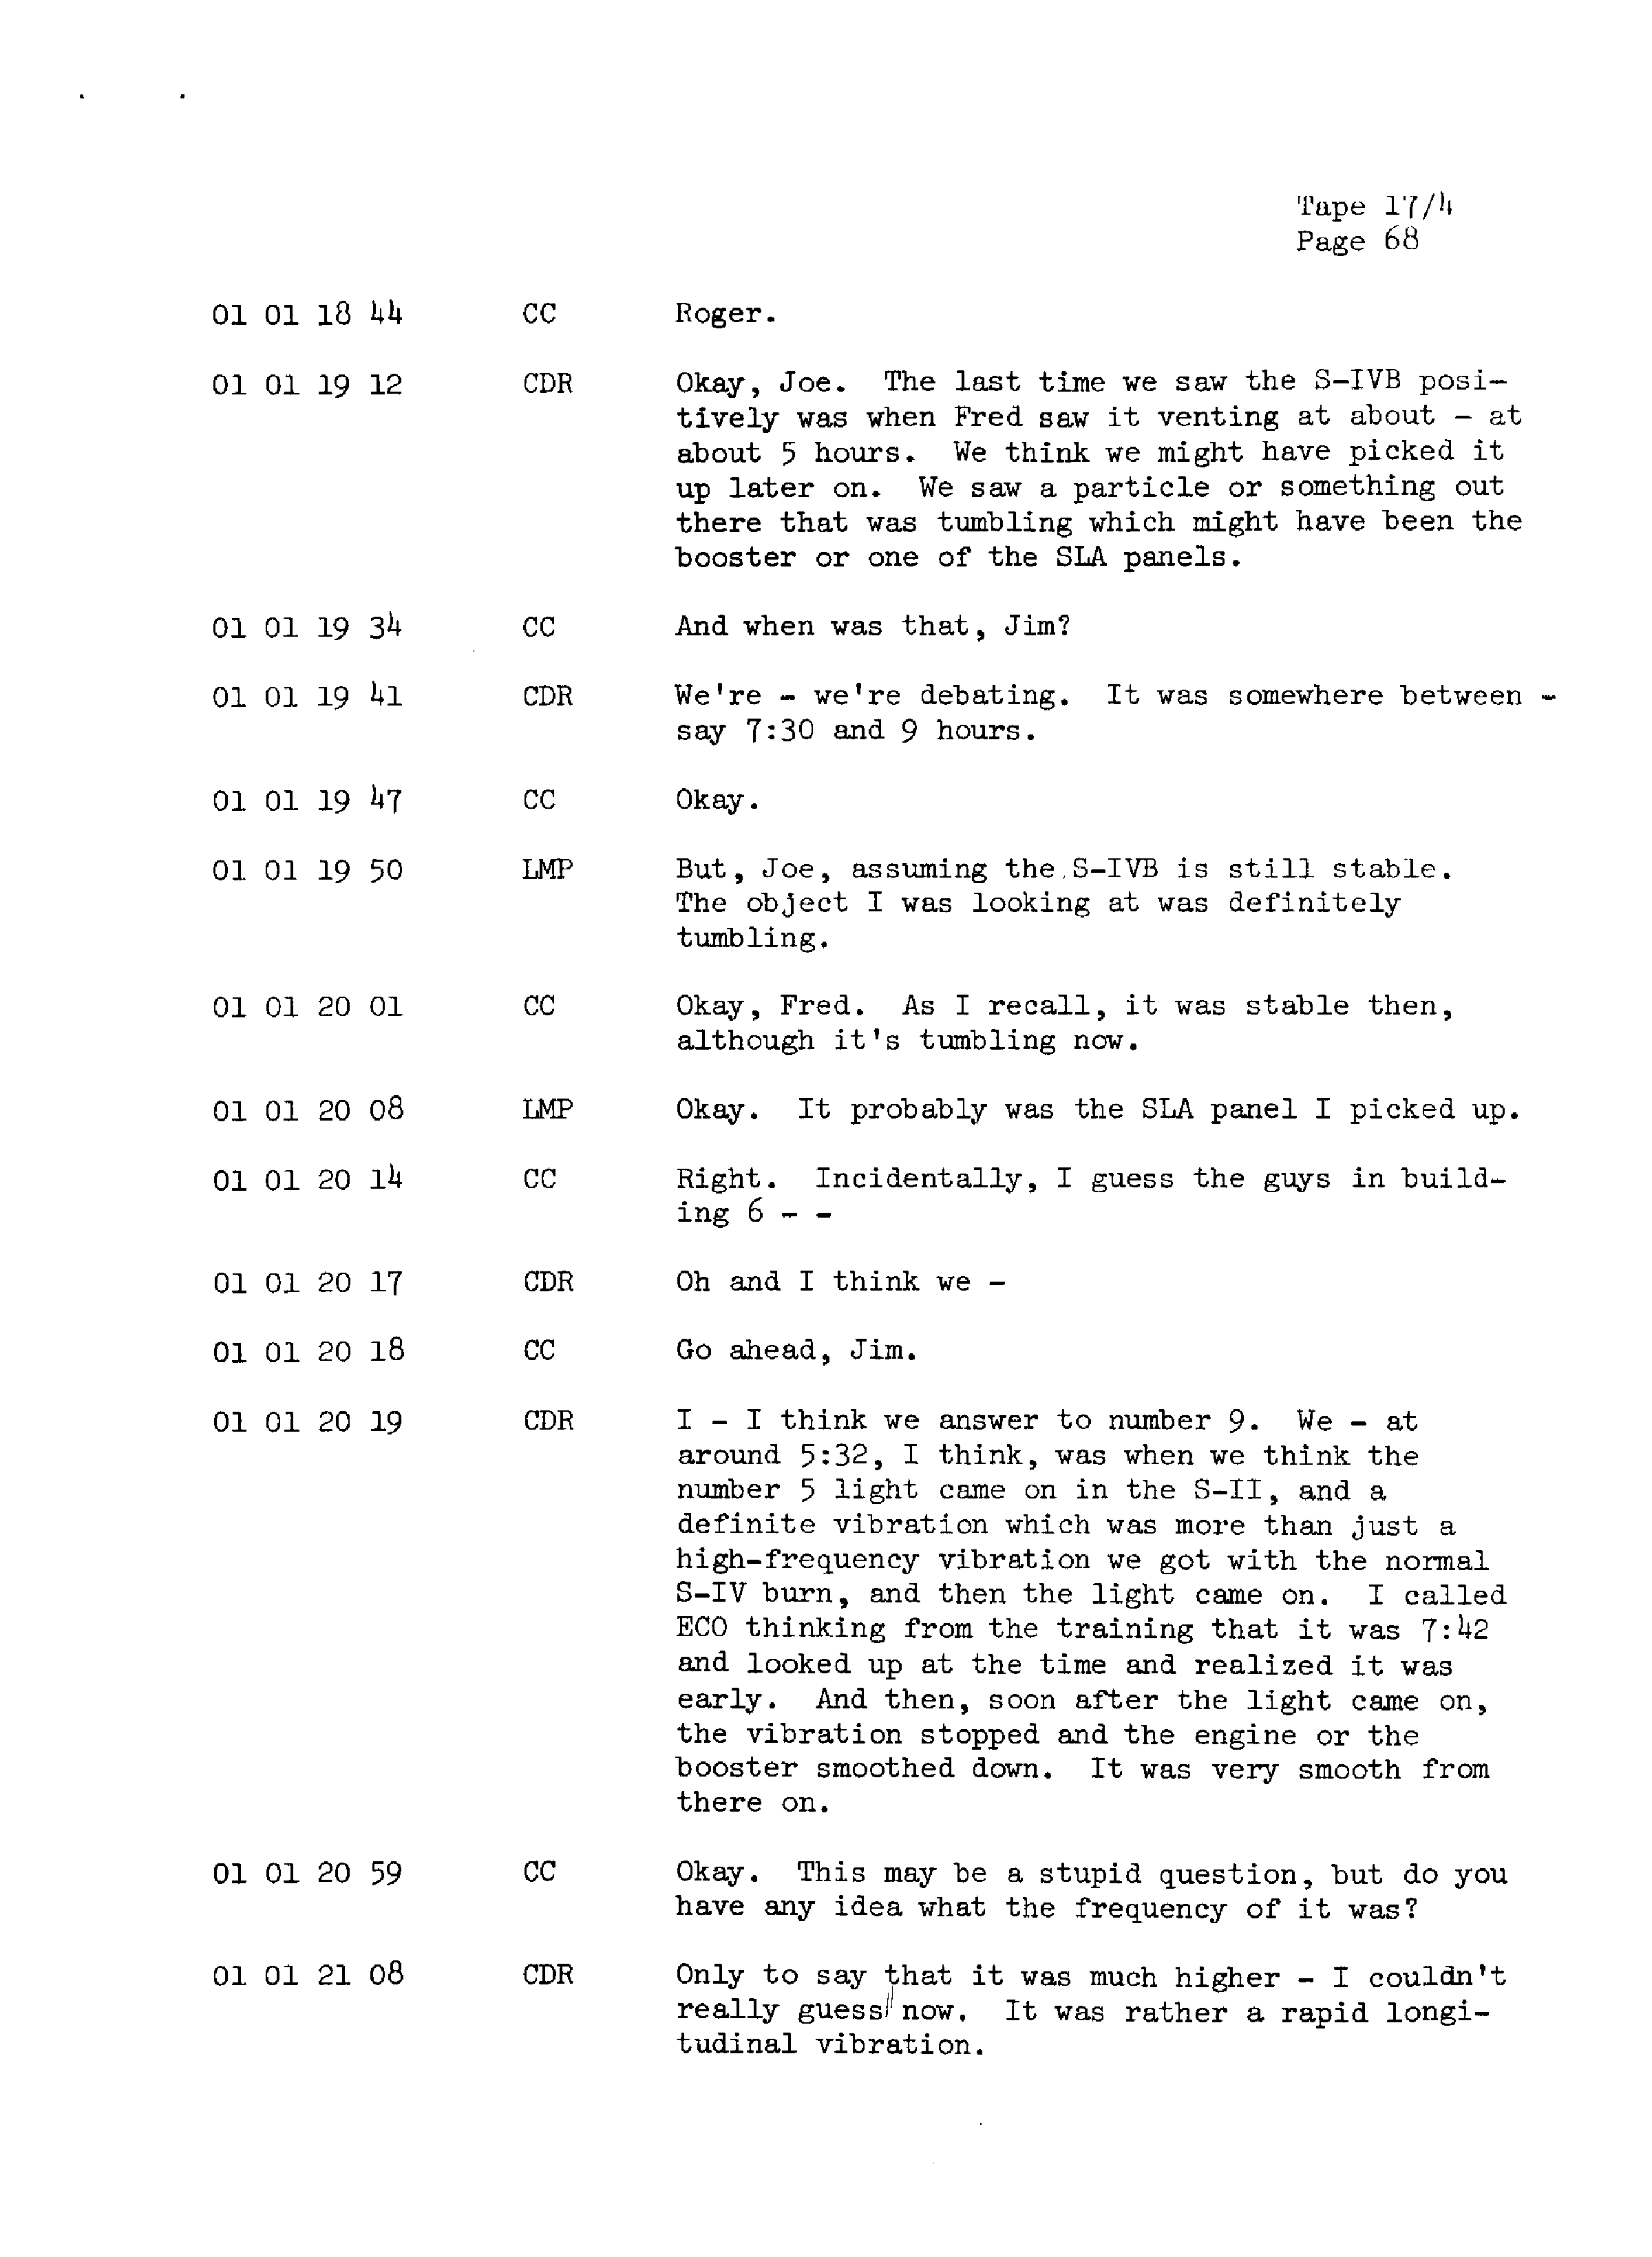 Page 75 of Apollo 13’s original transcript